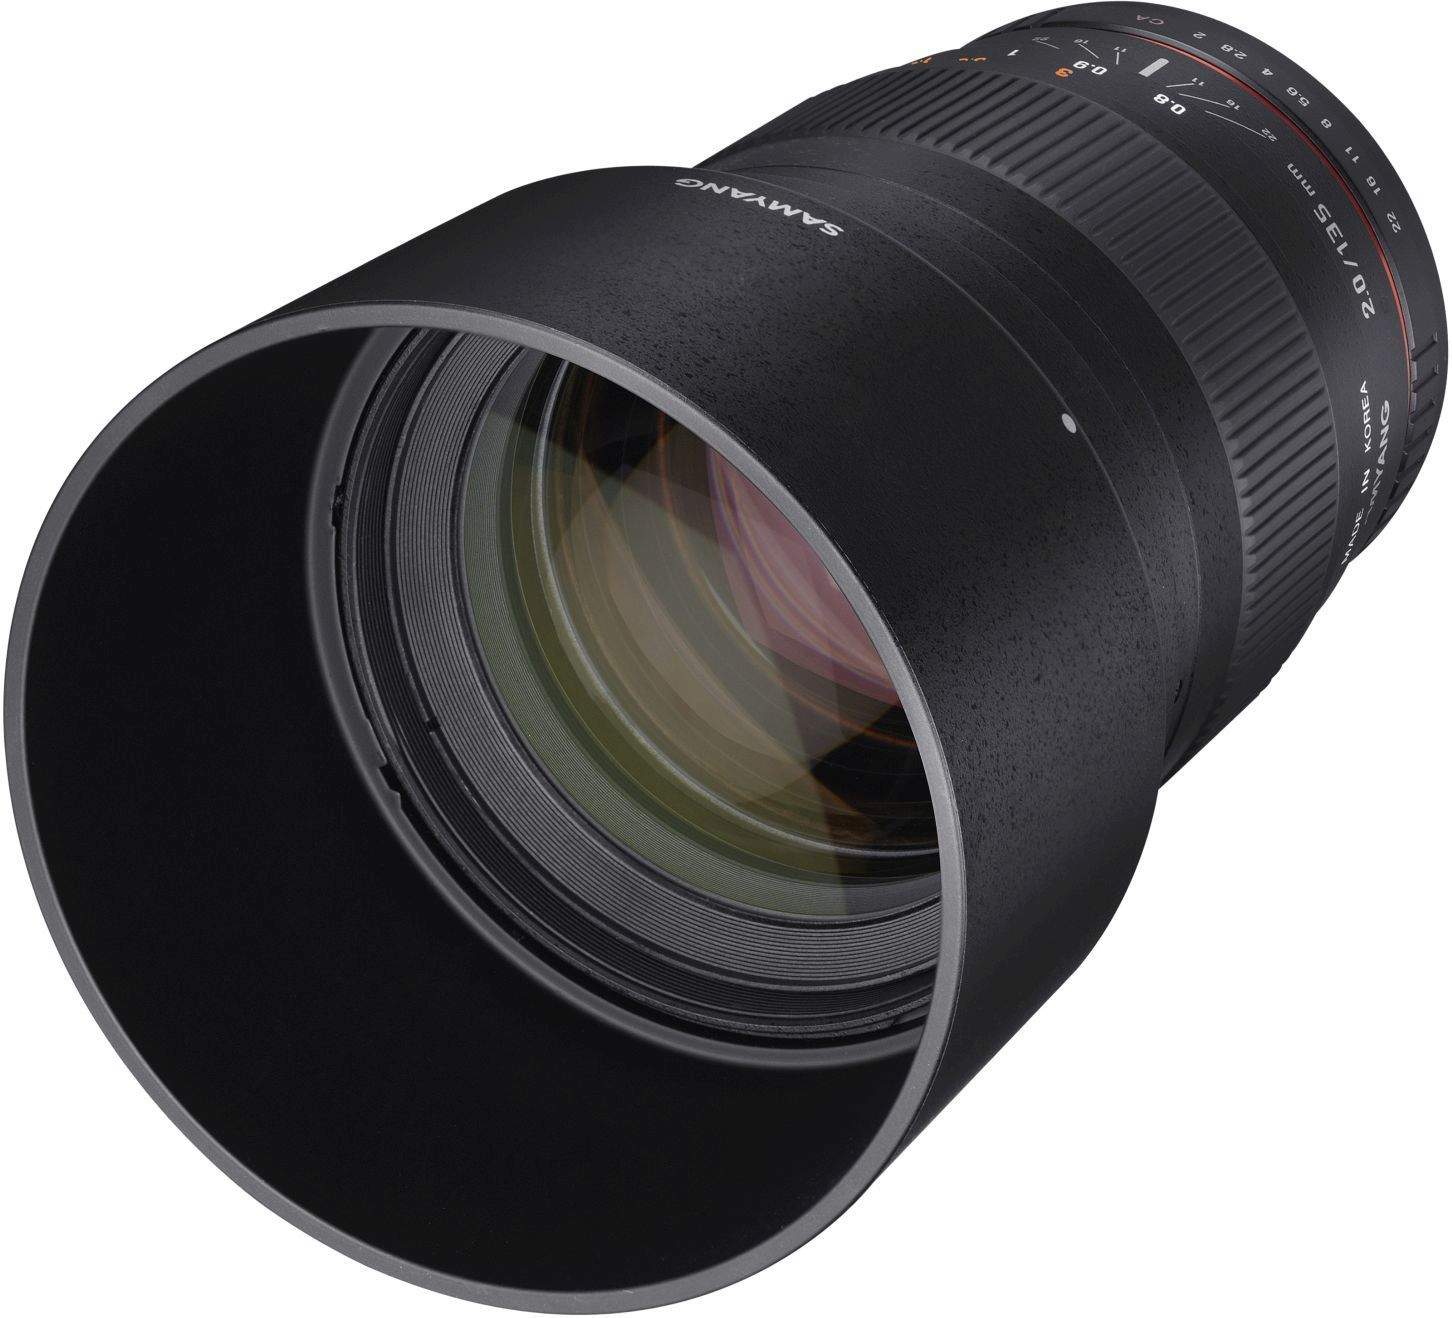 Samyang 135mm F2.0 ED UMC II MFT Full Frame Camera Lens